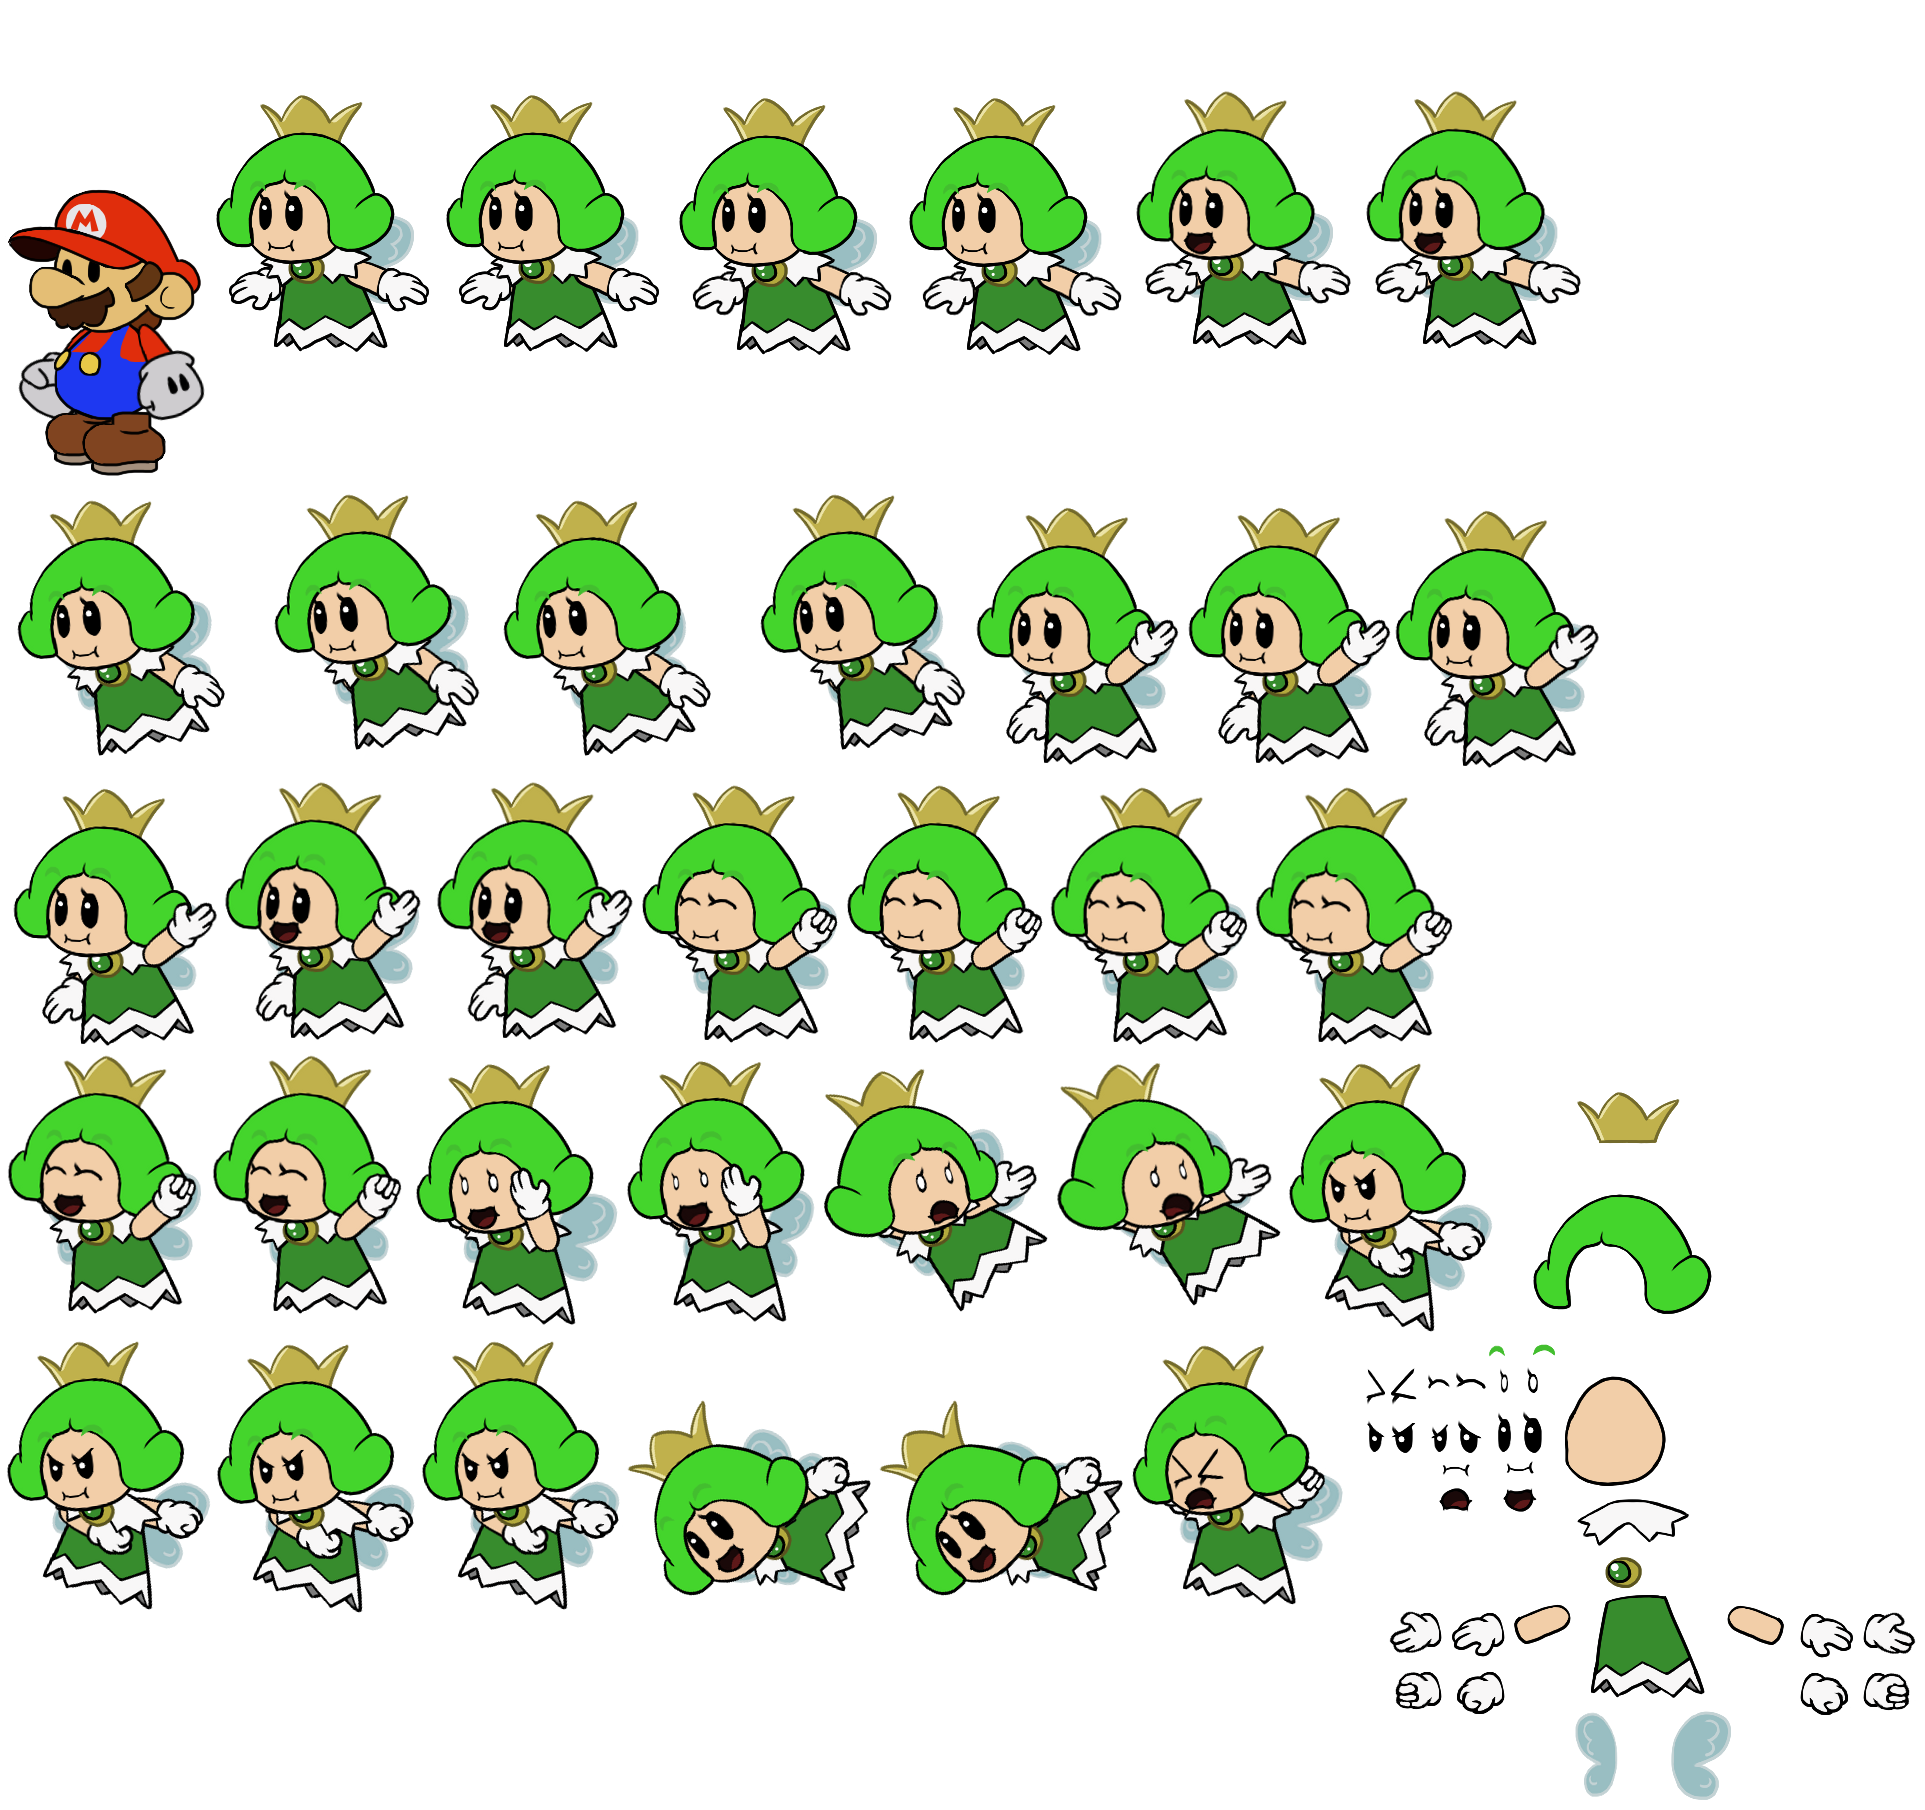 Mario Customs - Green Sprixie Princess (Paper Mario-Style)